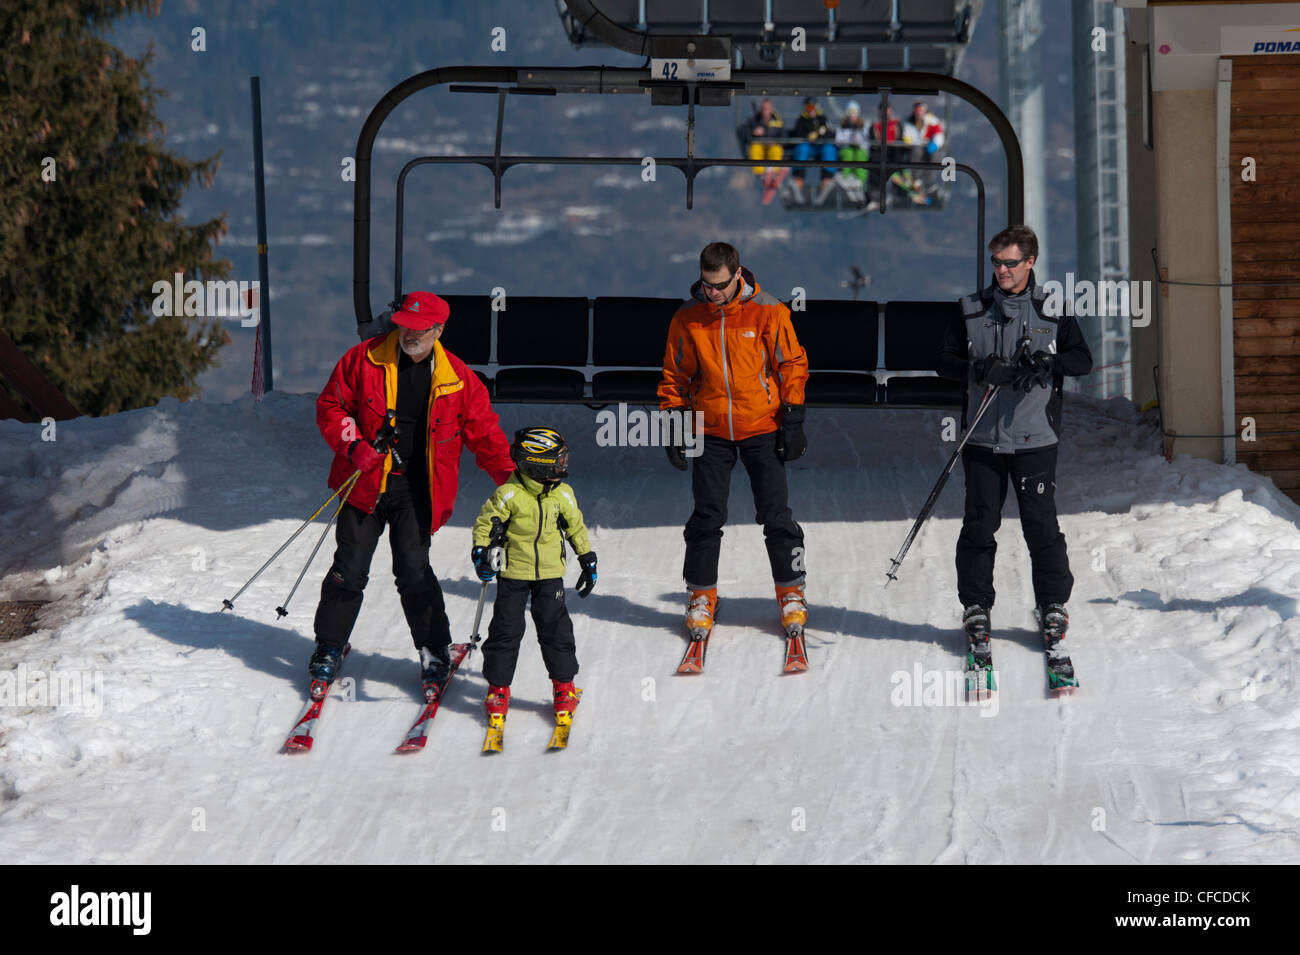 Télésiège de ski à Courchevel, domaine skiable des Trois Vallées, France. Trois adultes et un enfant d'un ascenseur. Porter des vêtements lumineux Banque D'Images